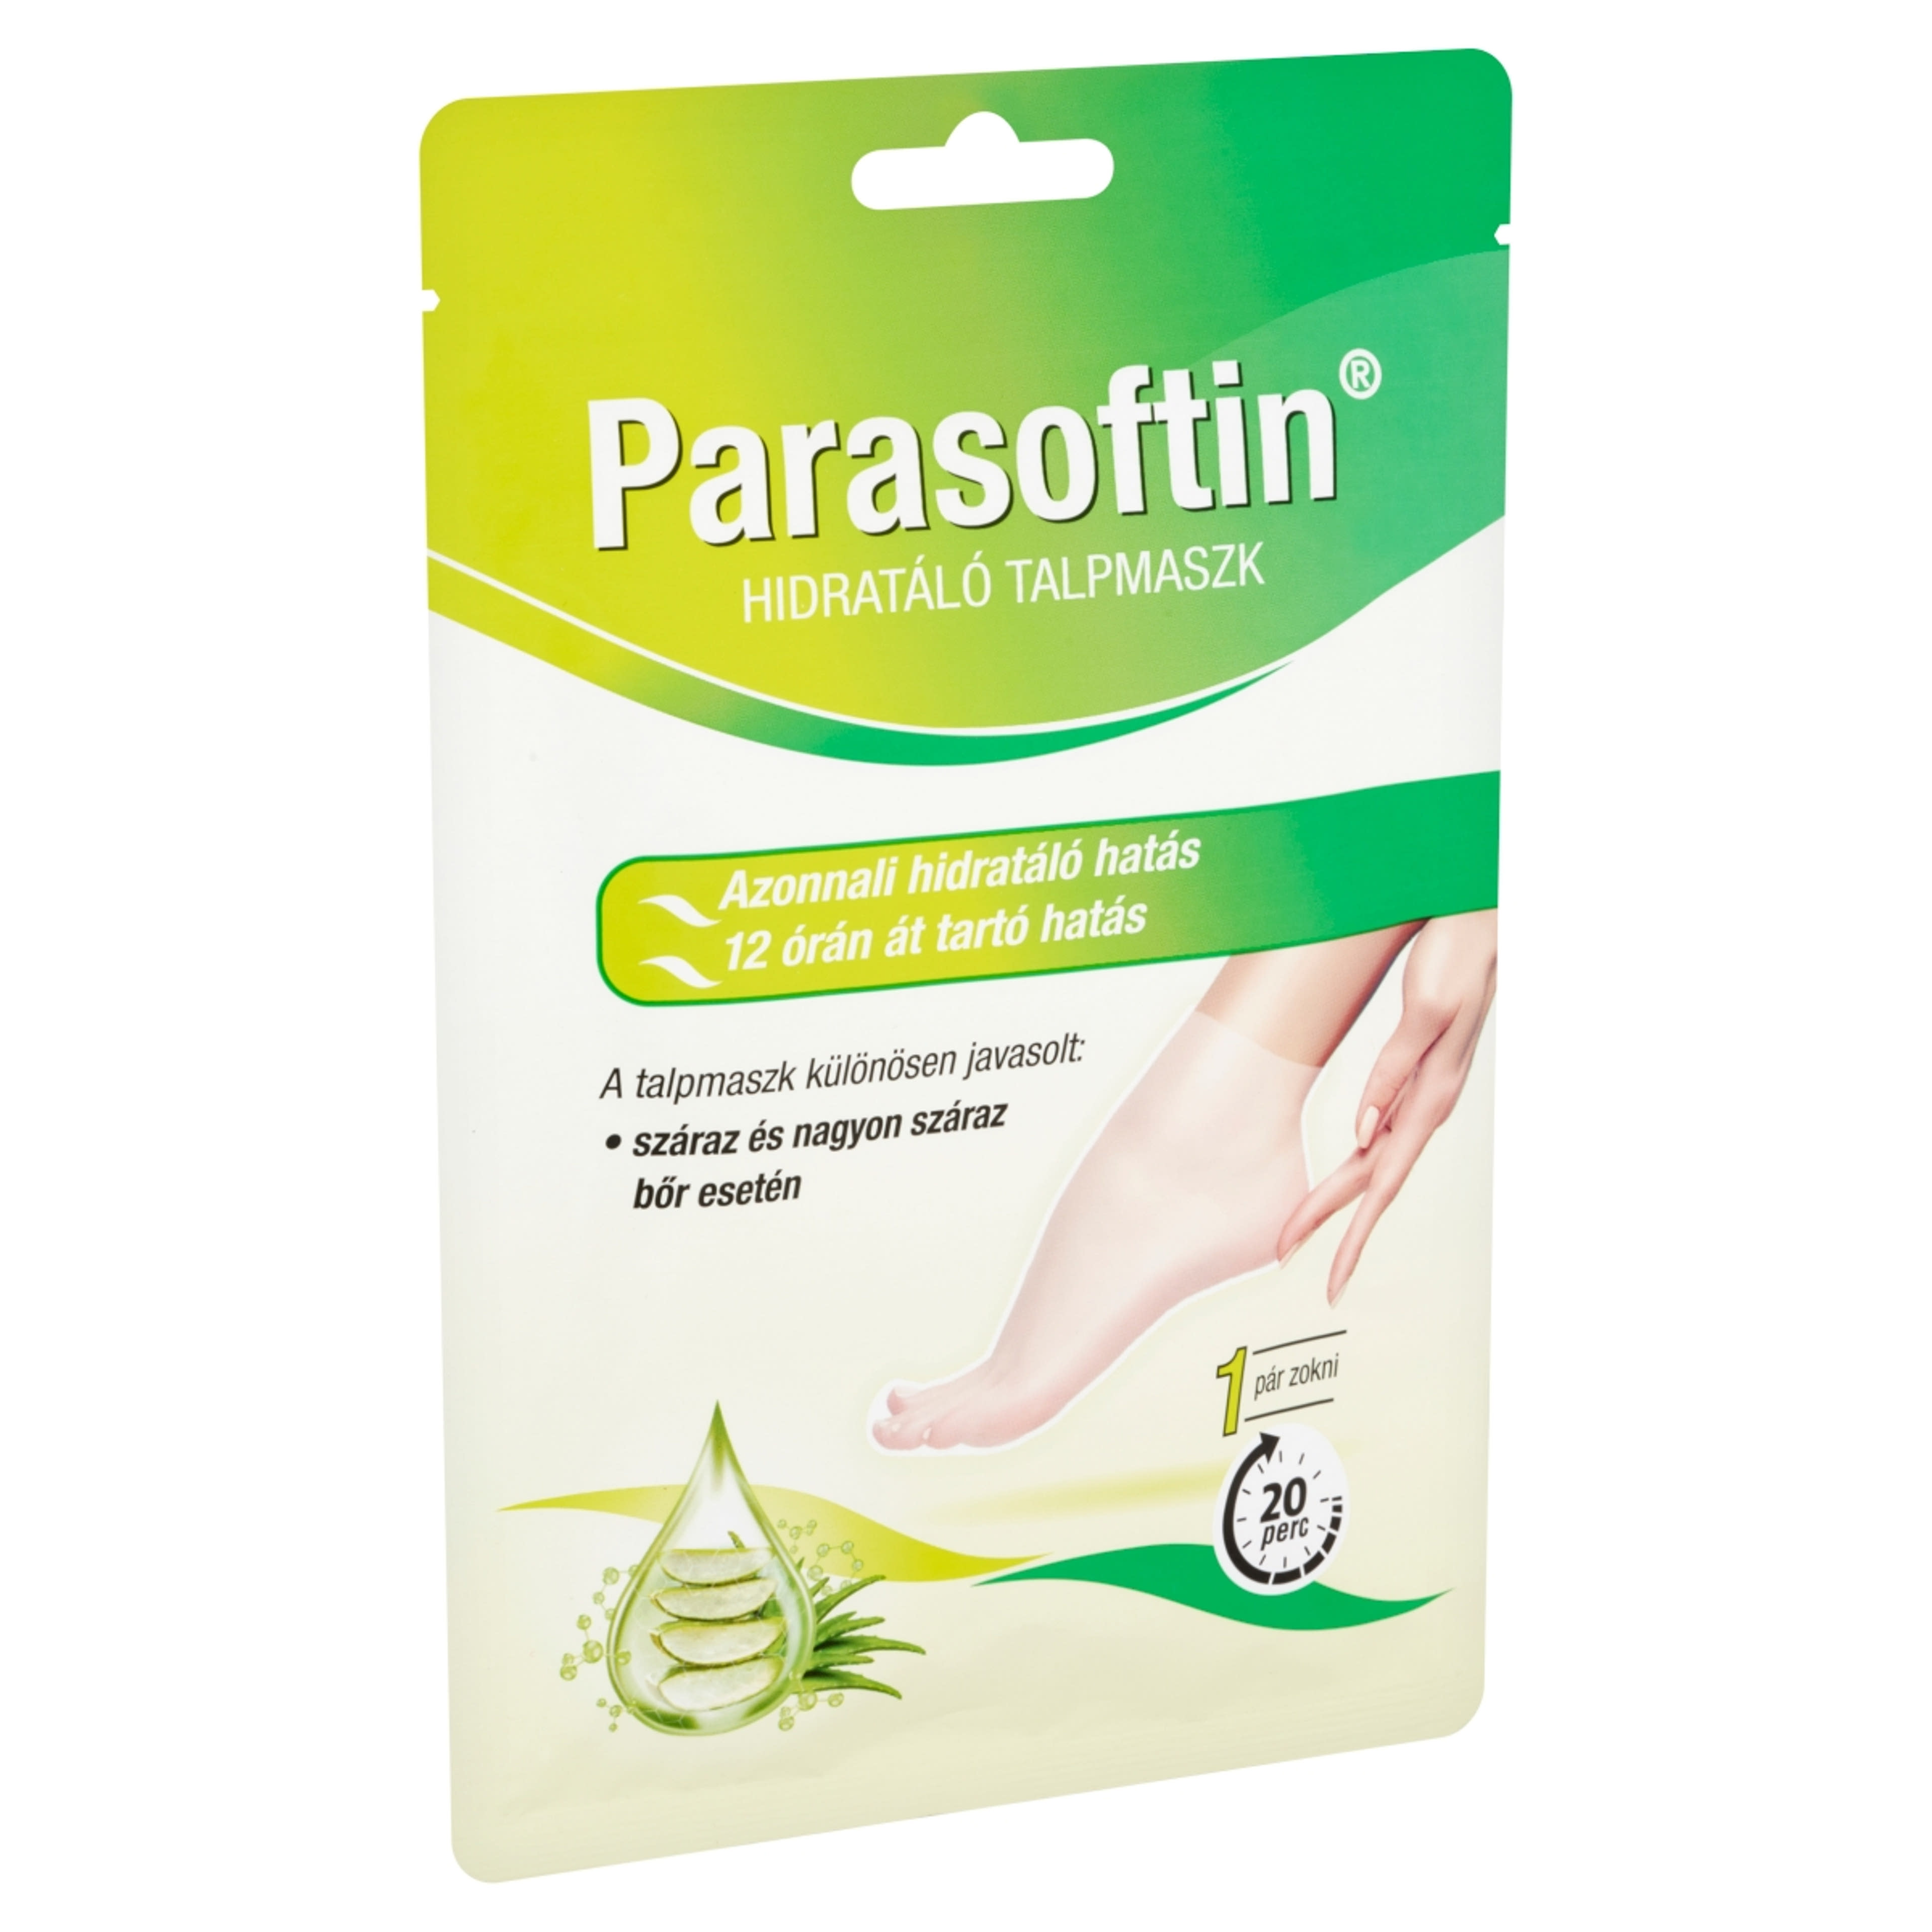 Parasofin hidratáló taplmaszk 1 pár - 1 db-4